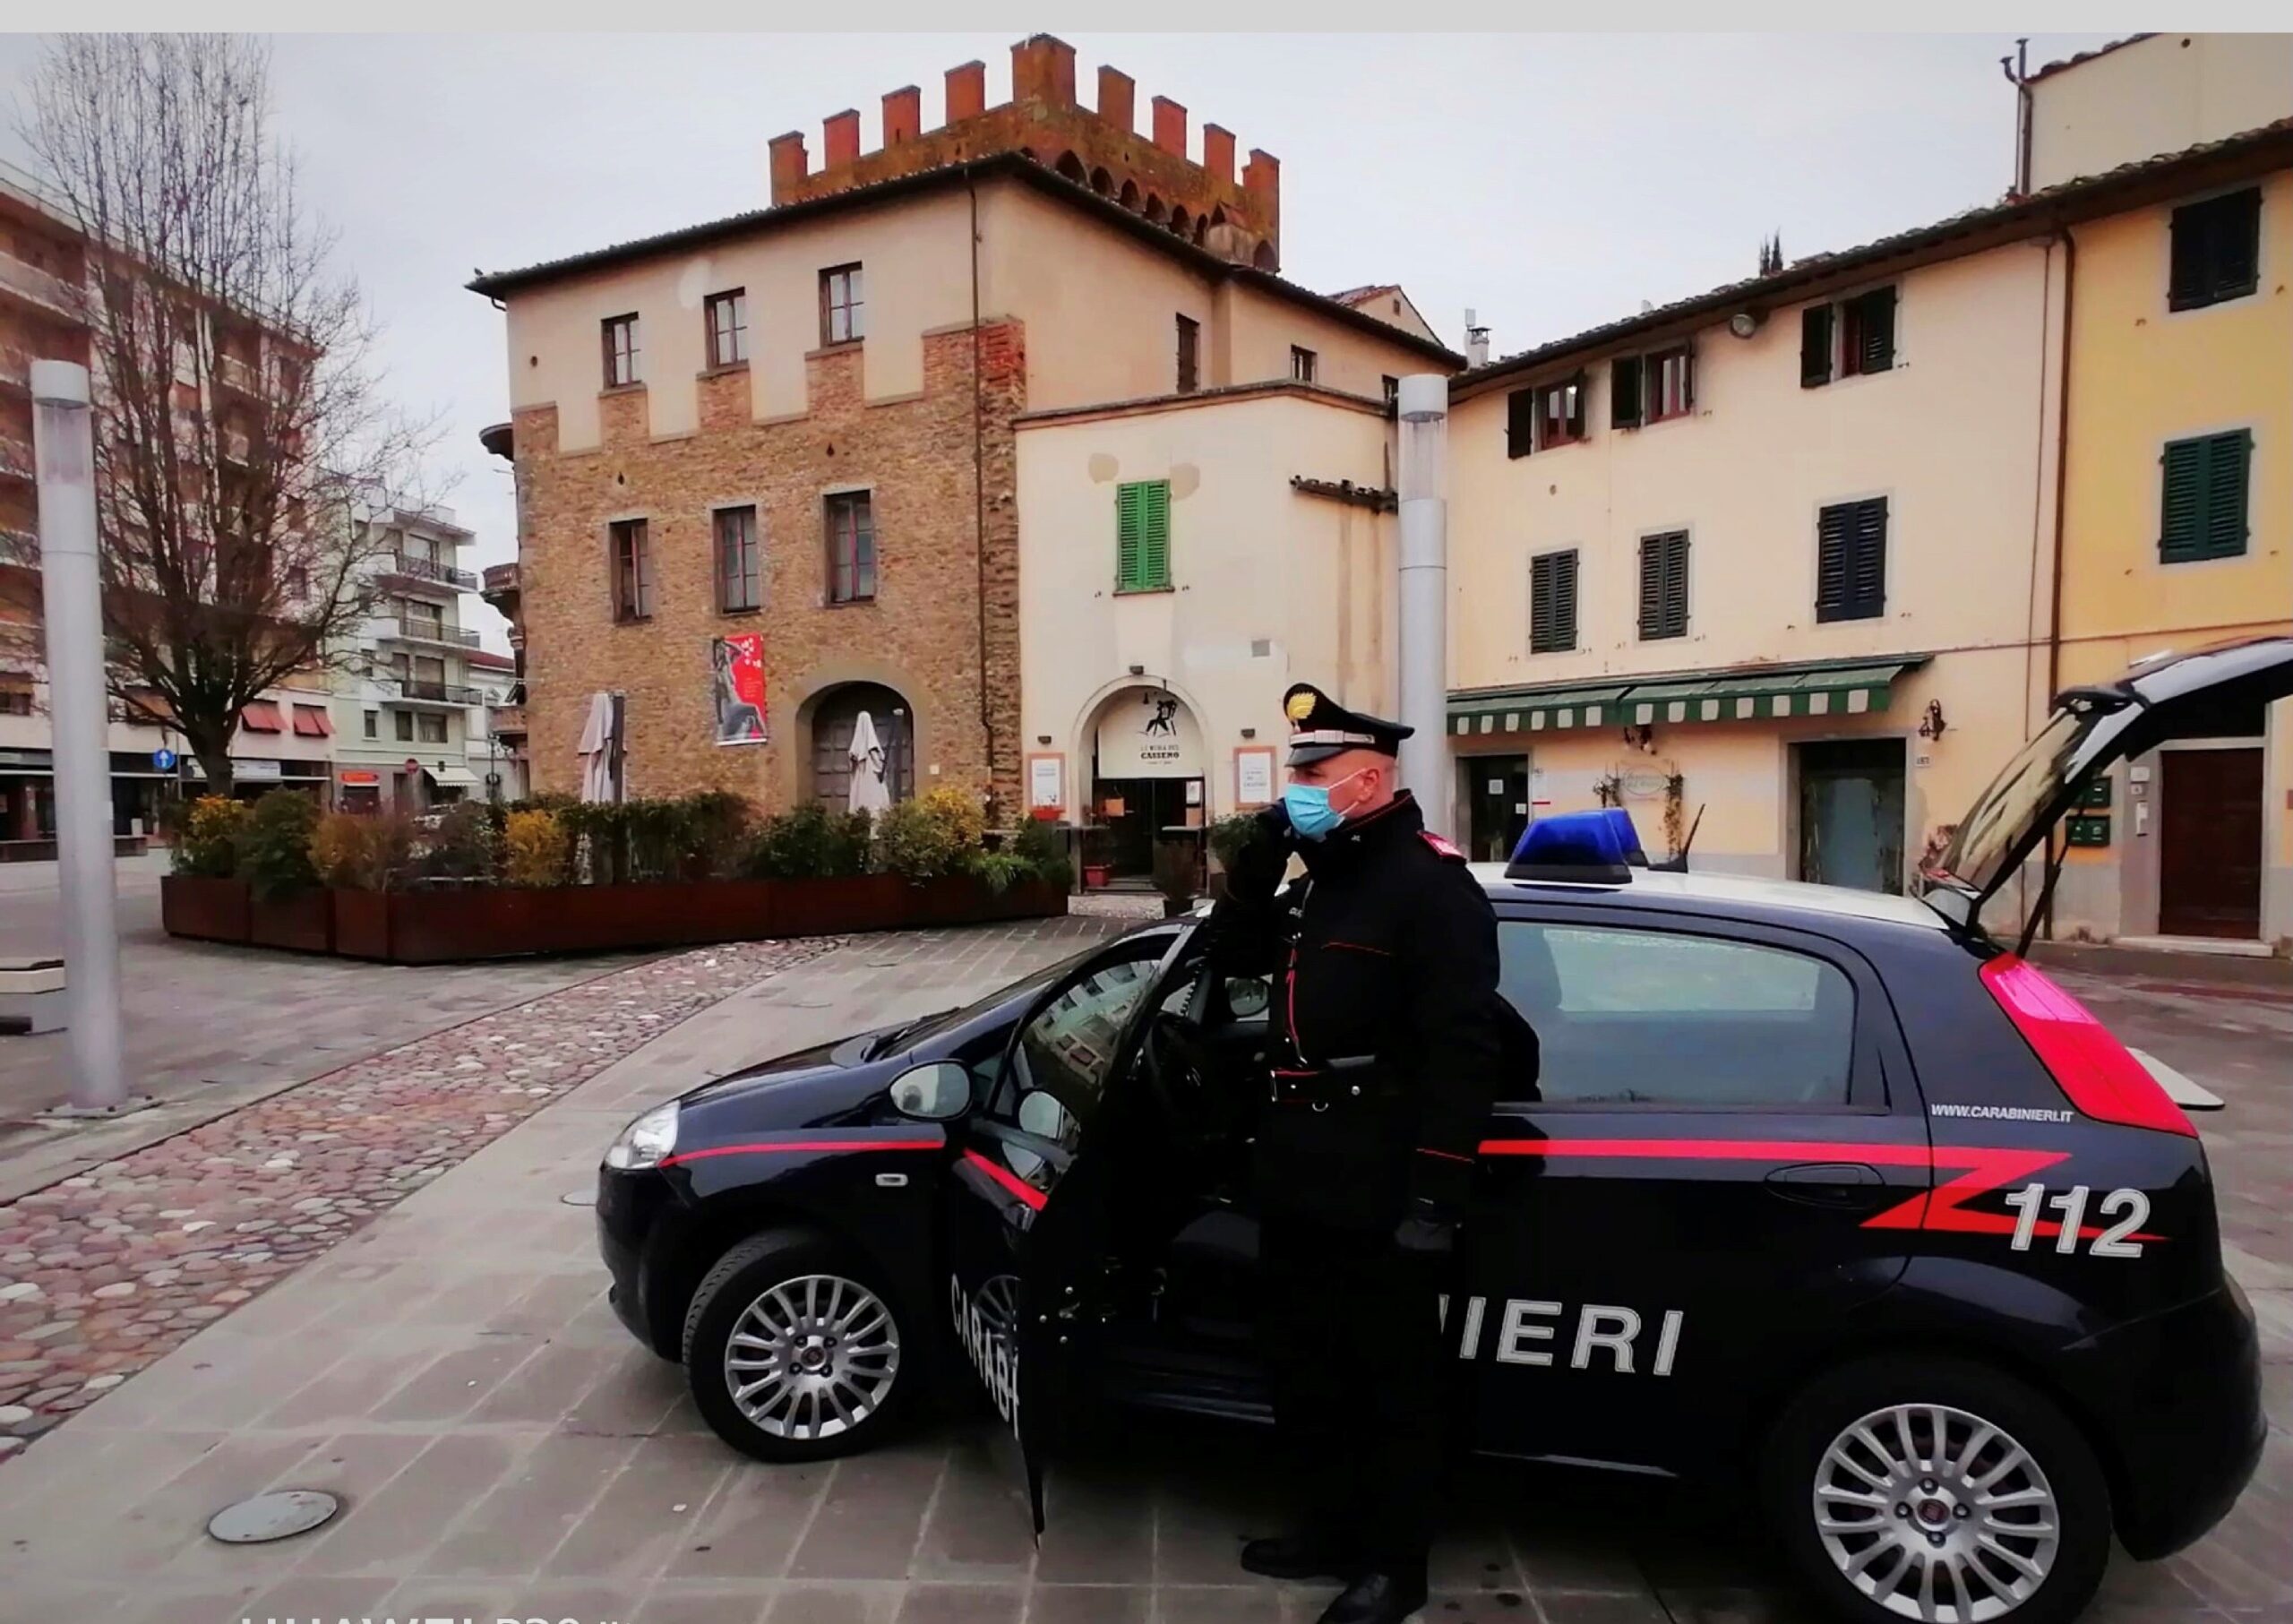 Montevarchi: estesa operazione dei Carabinieri contro le truffe elettroniche, denunciate 2 persone